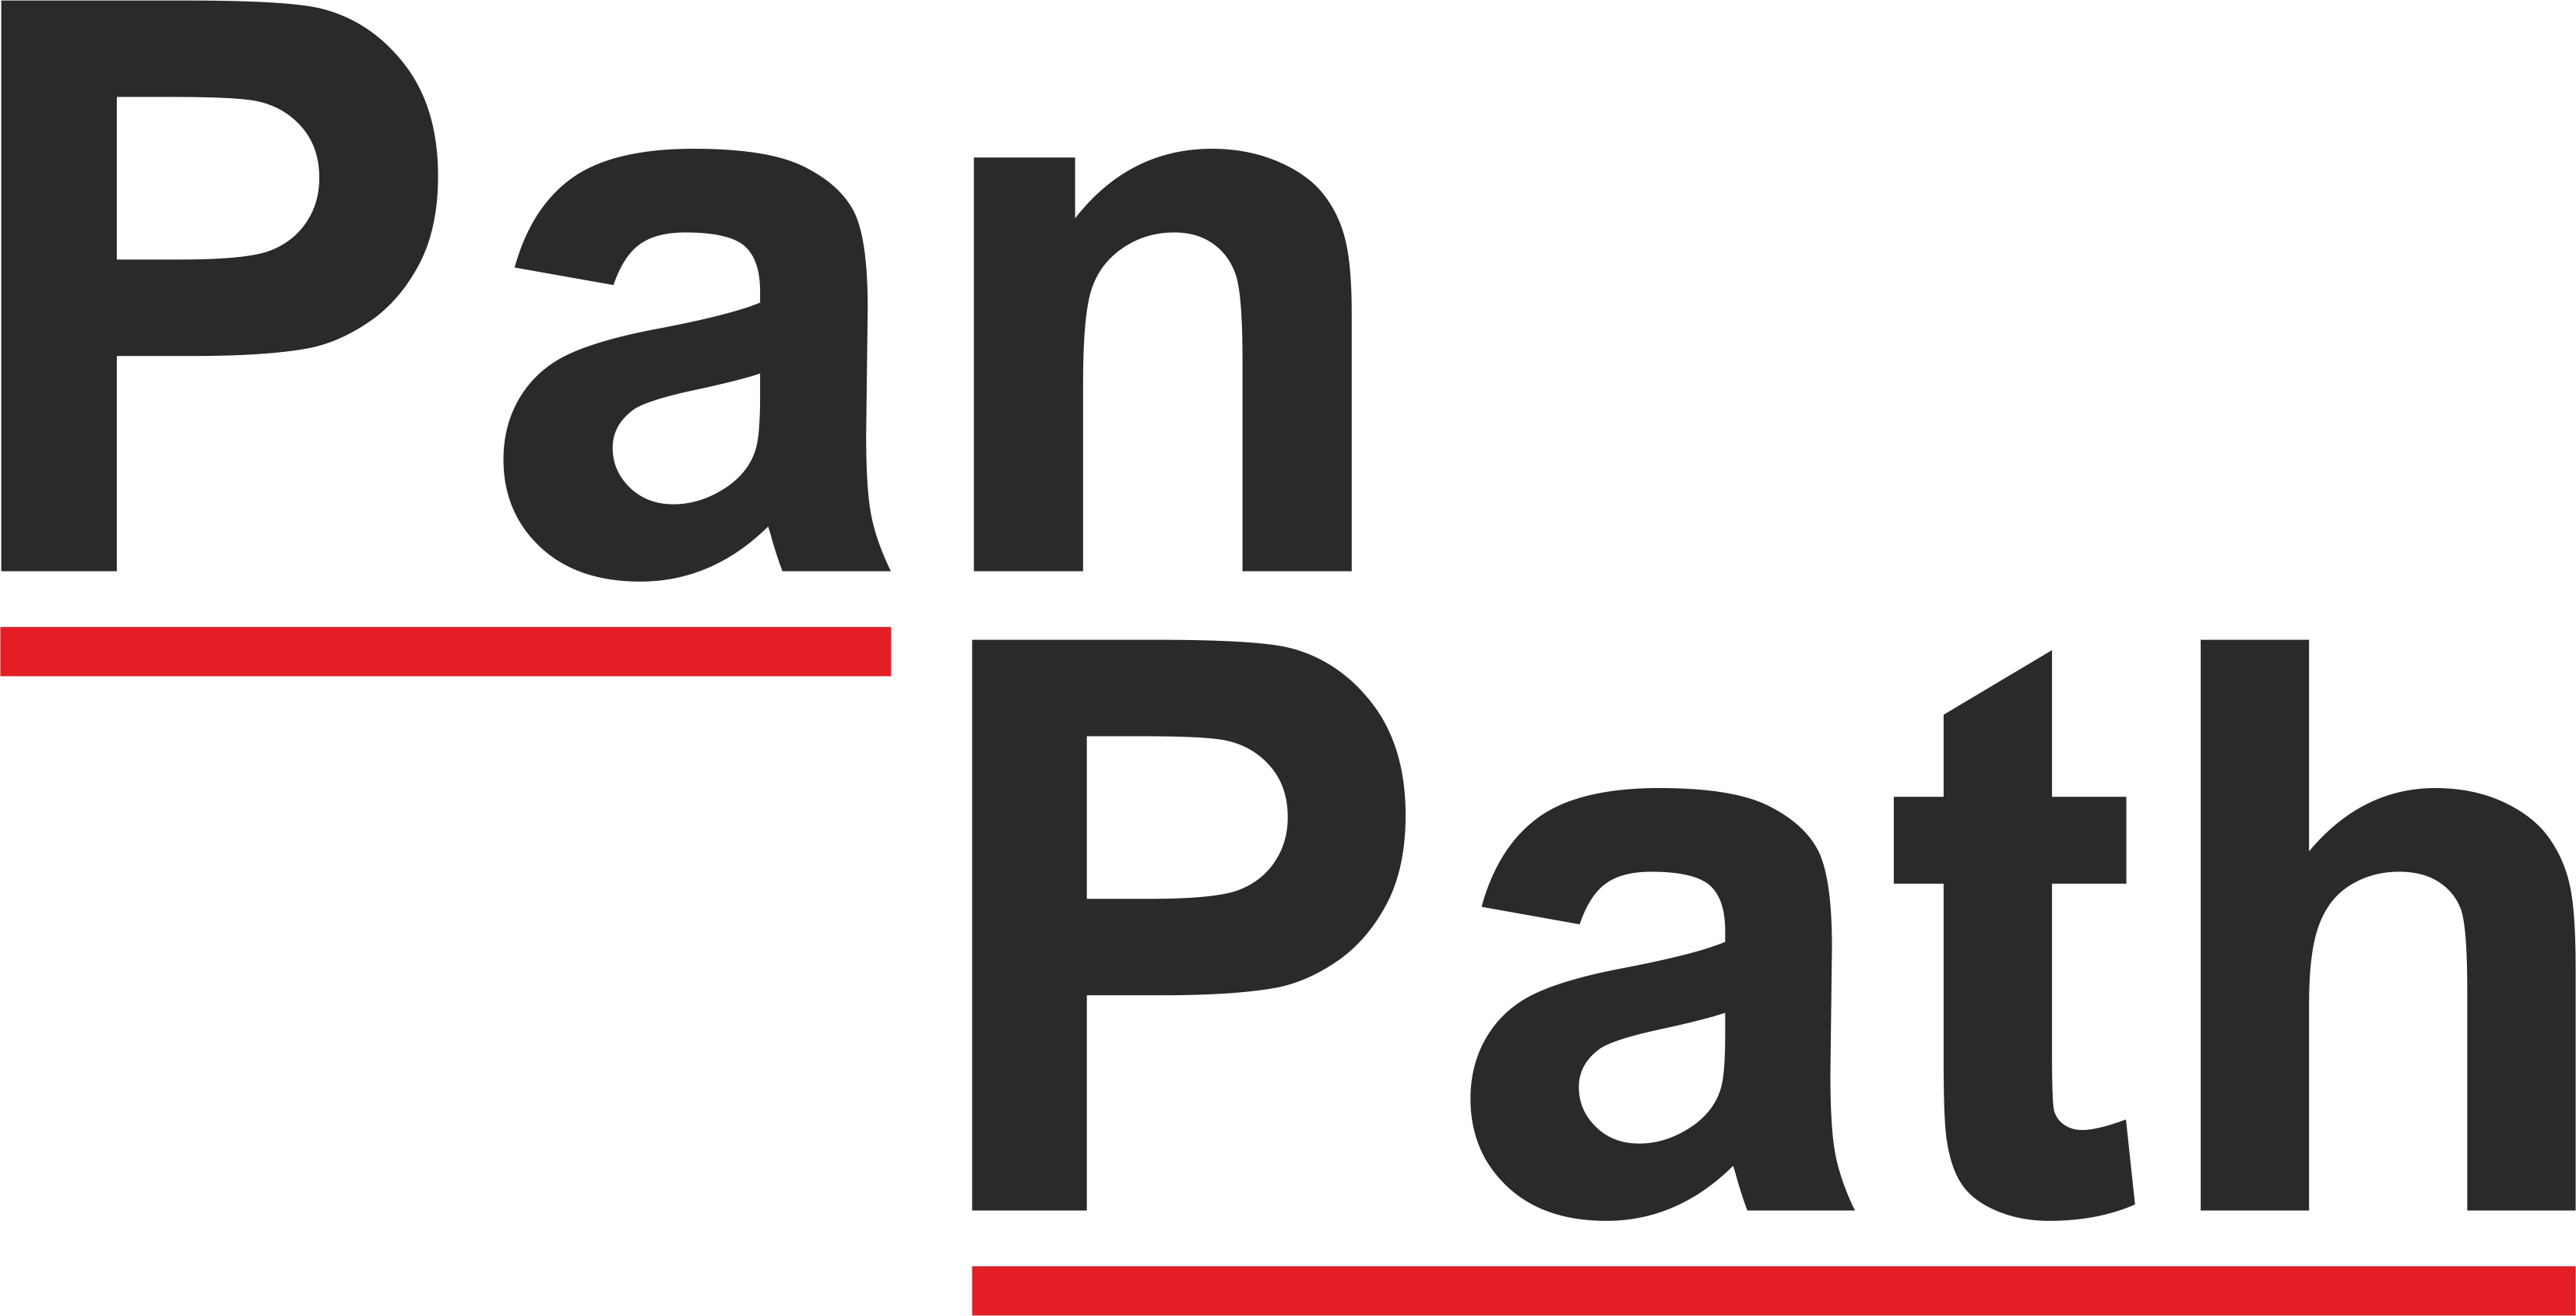 PanPath